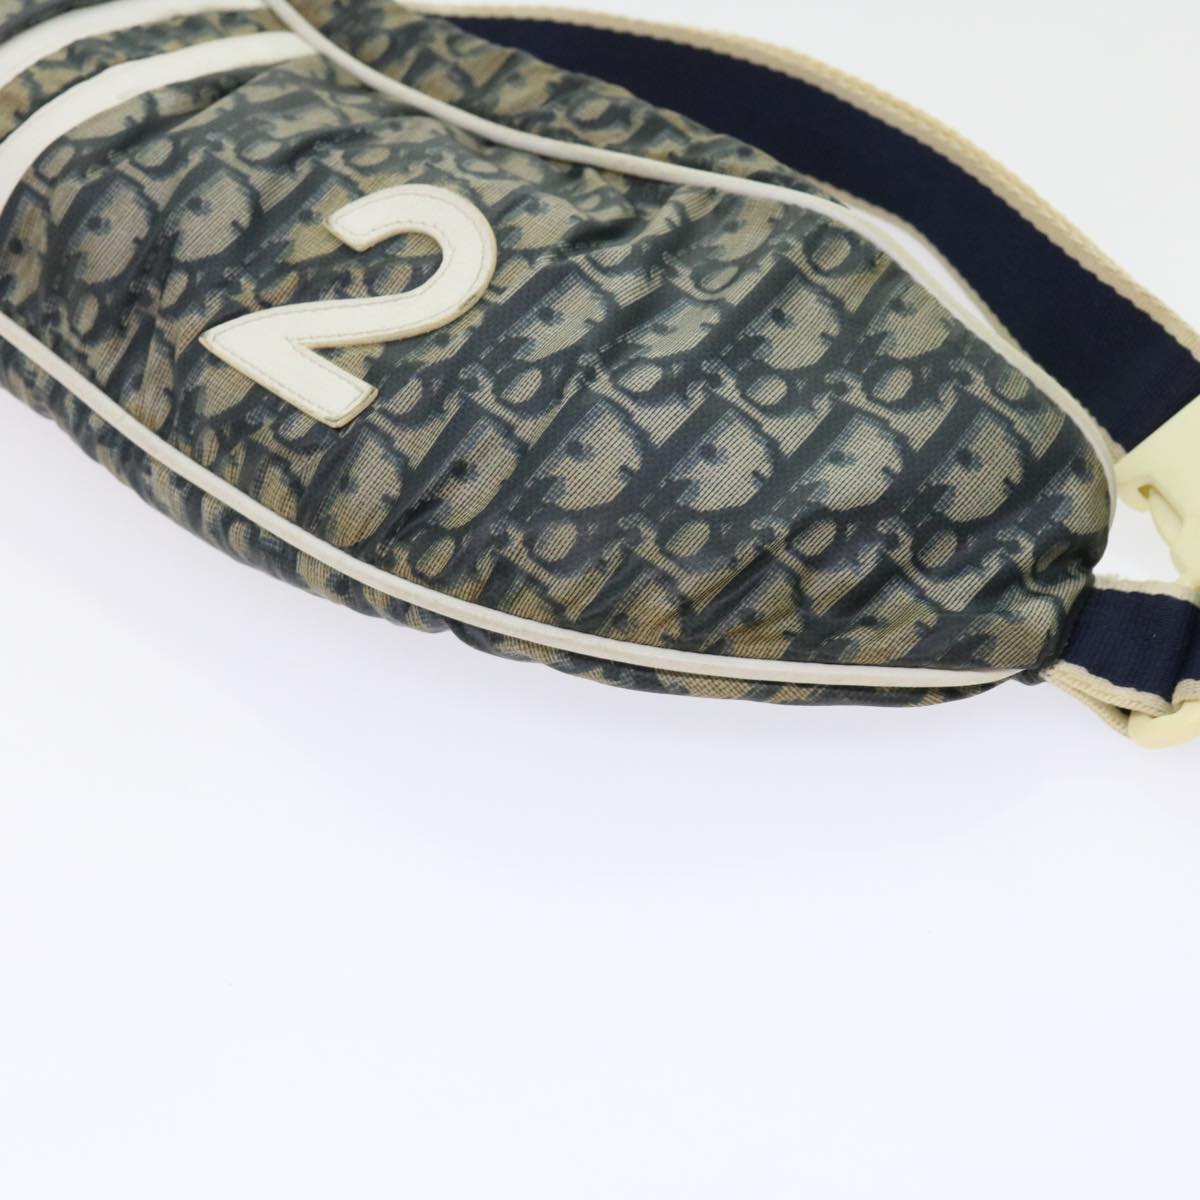 Christian Dior Trotter Canvas Waist bag Navy Auth 63718